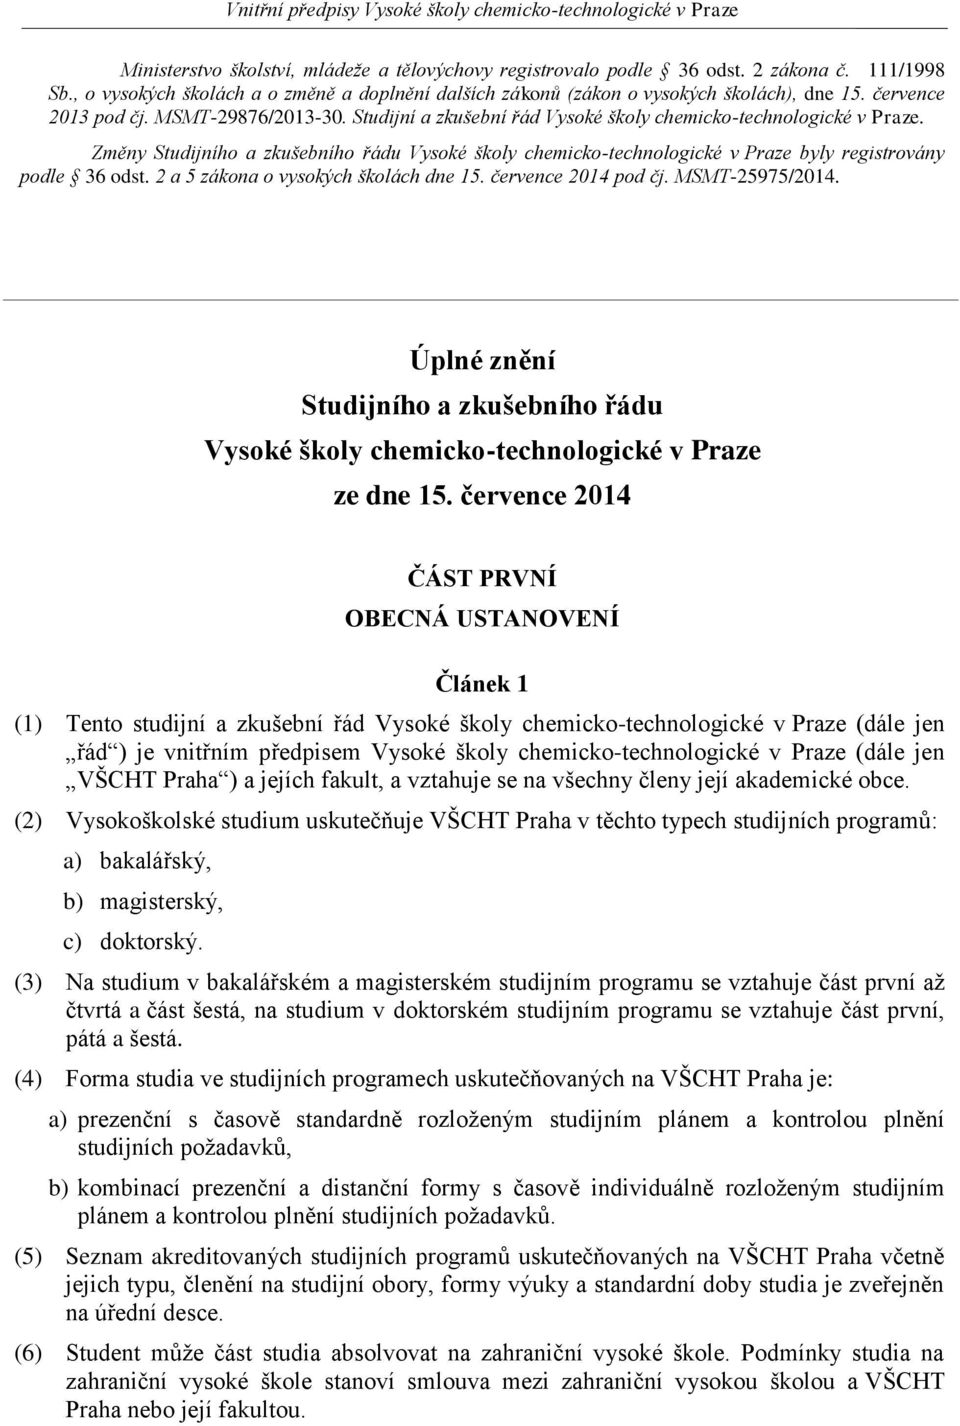 Změny Studijního a zkušebního řádu Vysoké školy chemicko-technologické v Praze byly registrovány podle 36 odst. 2 a 5 zákona o vysokých školách dne 15. července 2014 pod čj. MSMT-25975/2014.